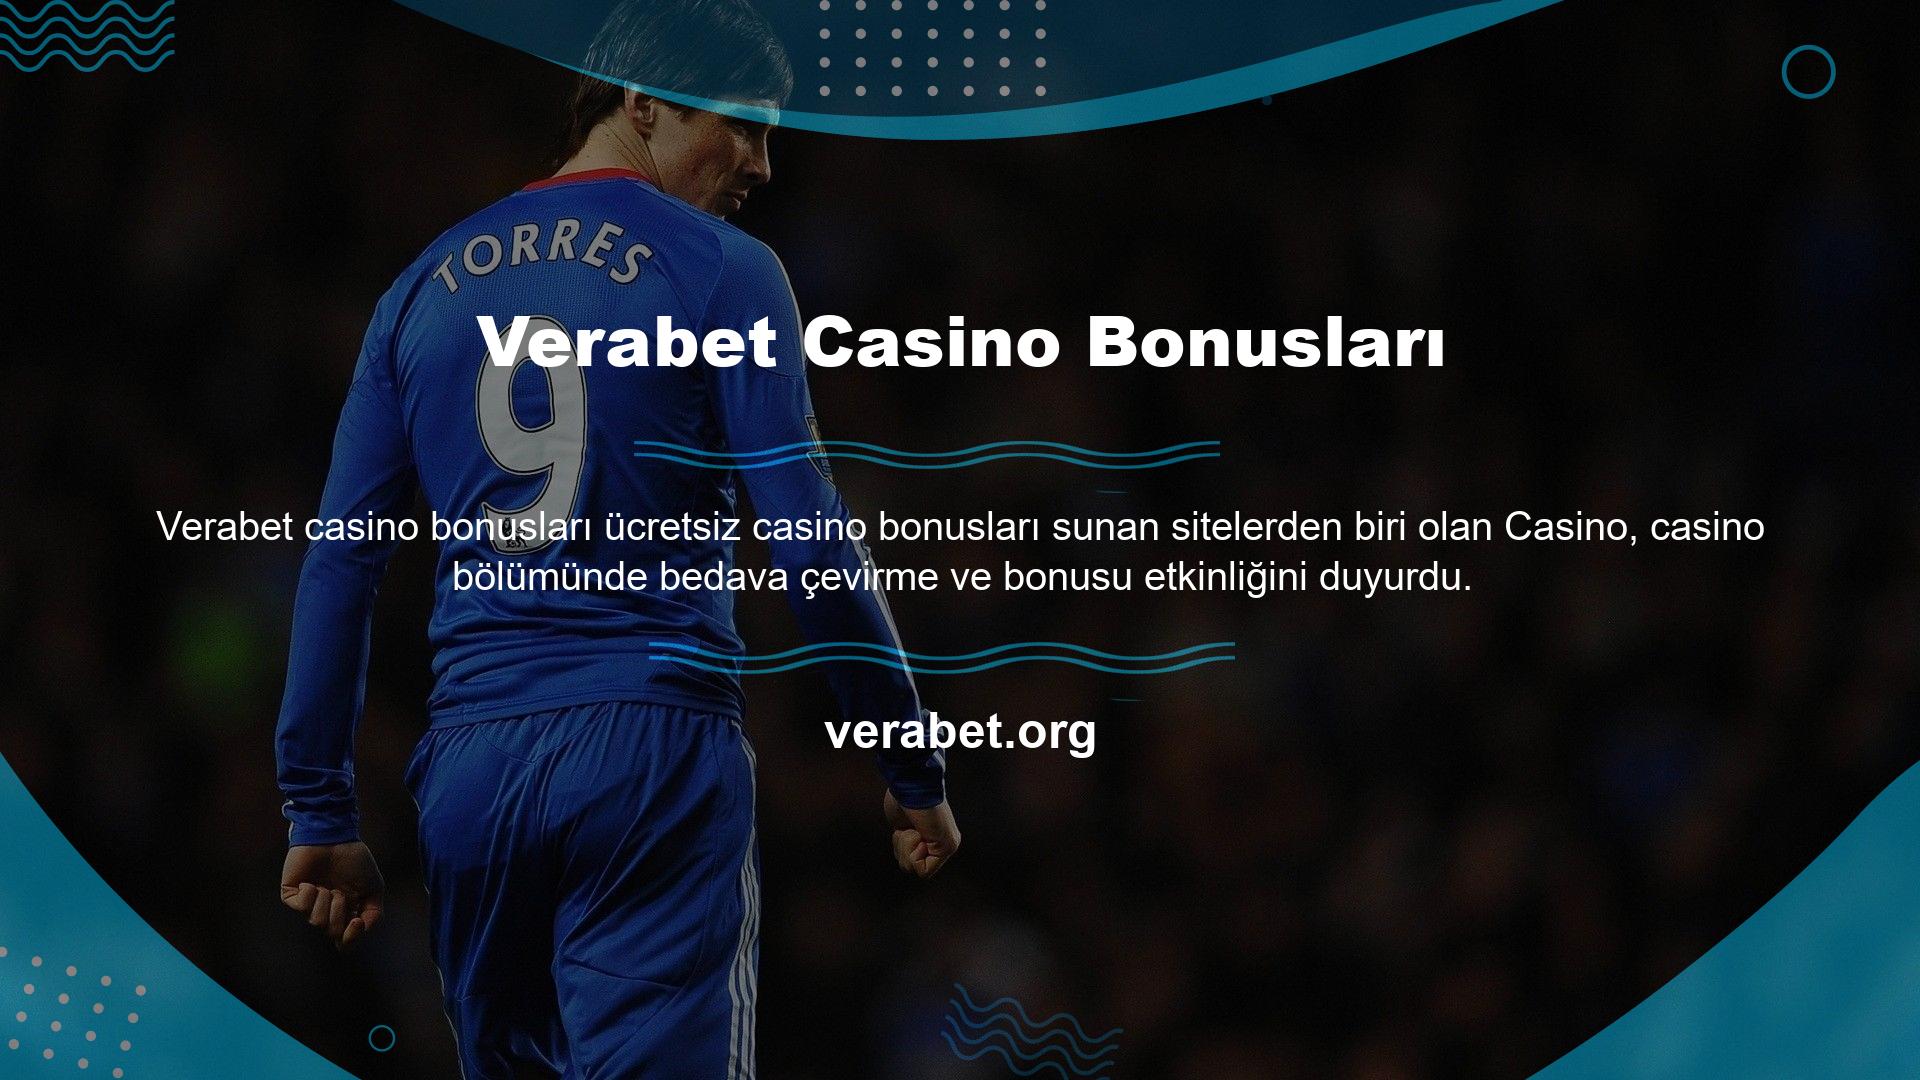 Verabet Online Casino bölümündeki promosyonlarınızı, özellikle Verabet bonusu olmak üzere slot oyunları için de kullanabilirsiniz